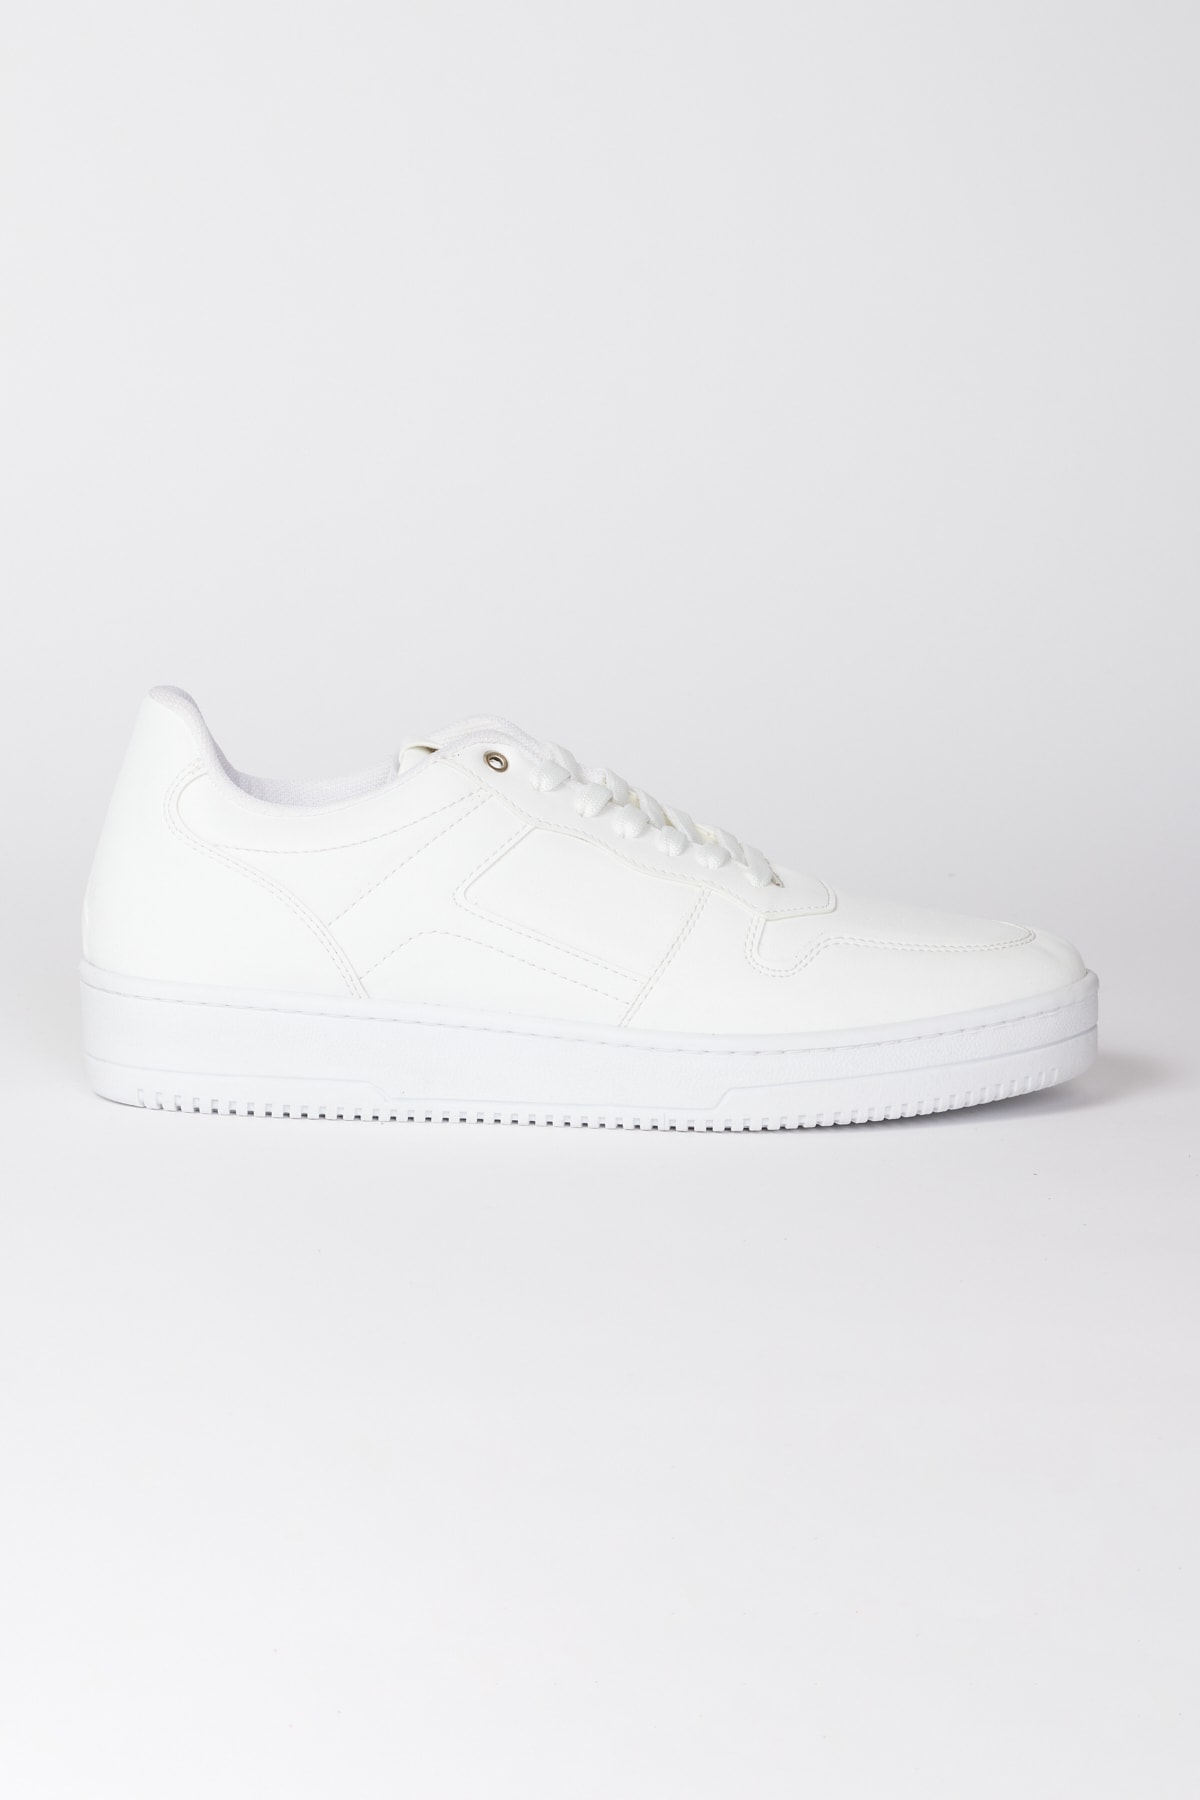 AC&Co / Altınyıldız Classics Men's White Laced Comfort Sole Casual Sneaker Shoes